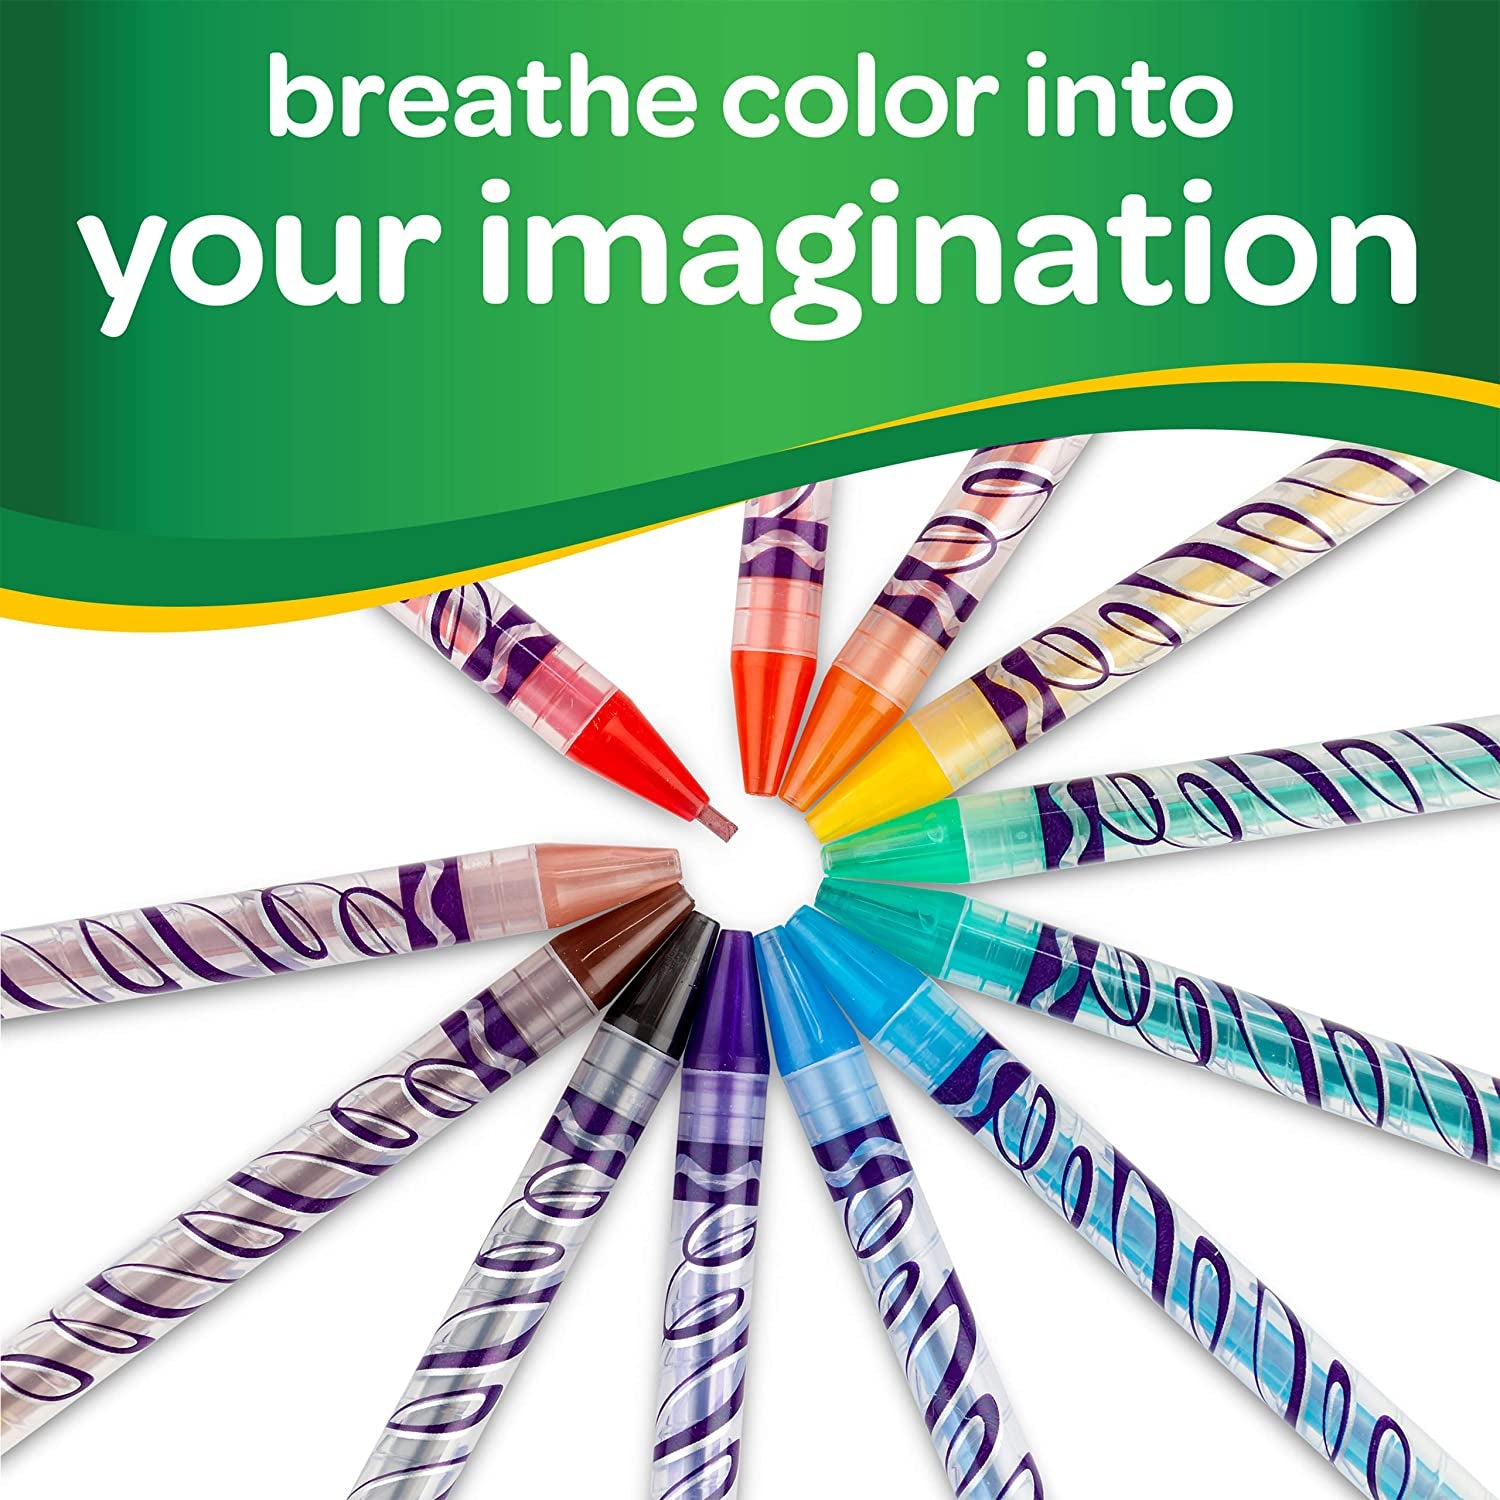 Crayola Twistables - Juego de lápices de colores (50 unidades)